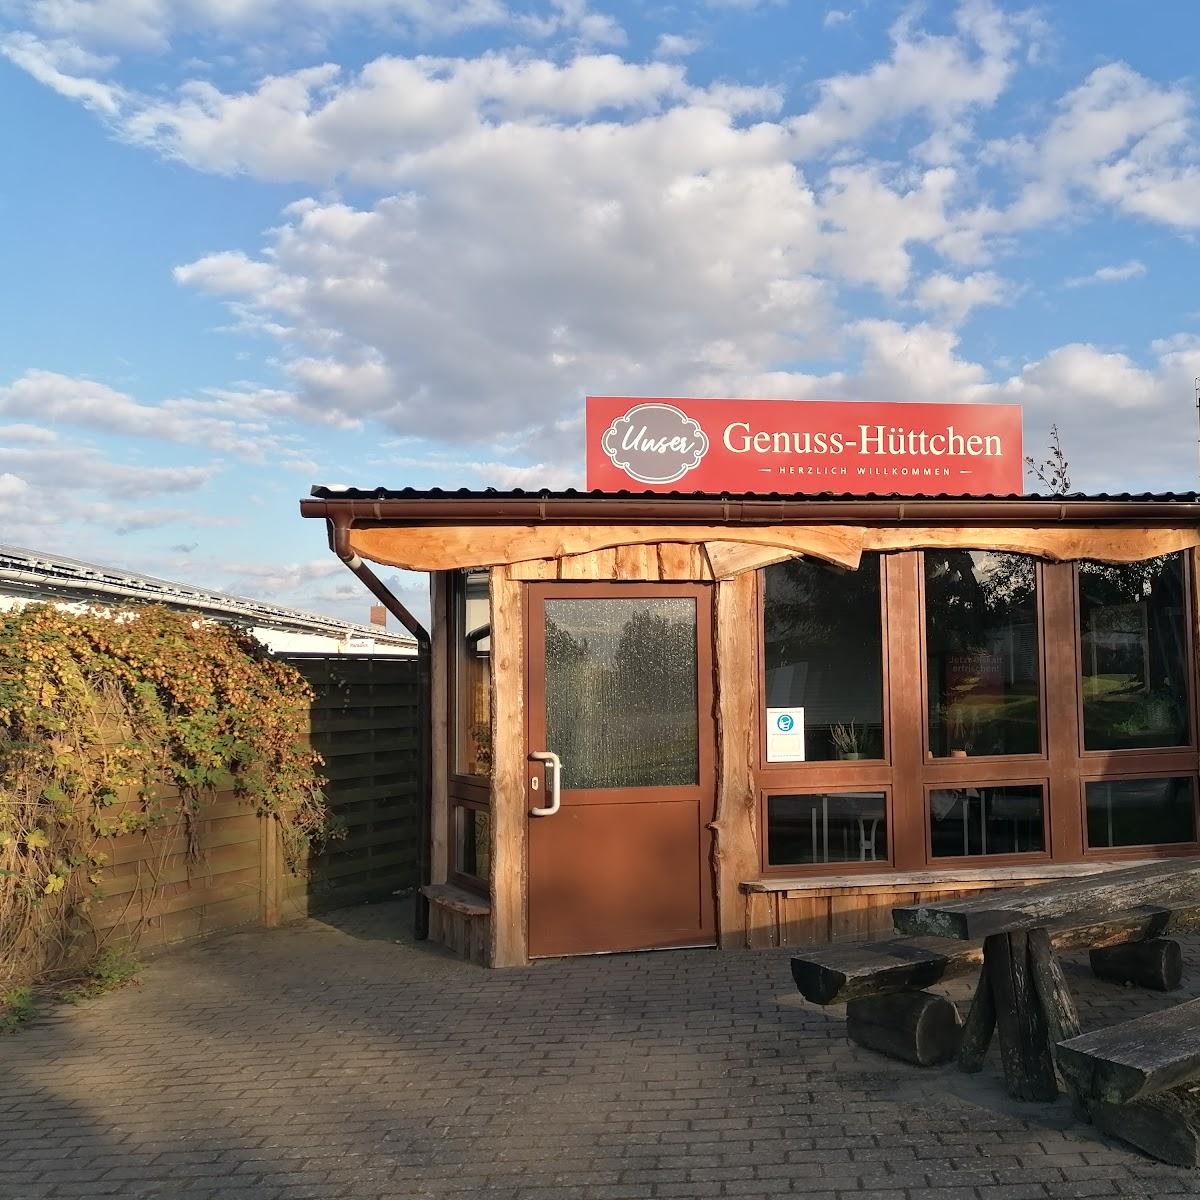 Restaurant "Unser Genuss-Hüttchen" in Wittstock-Dosse